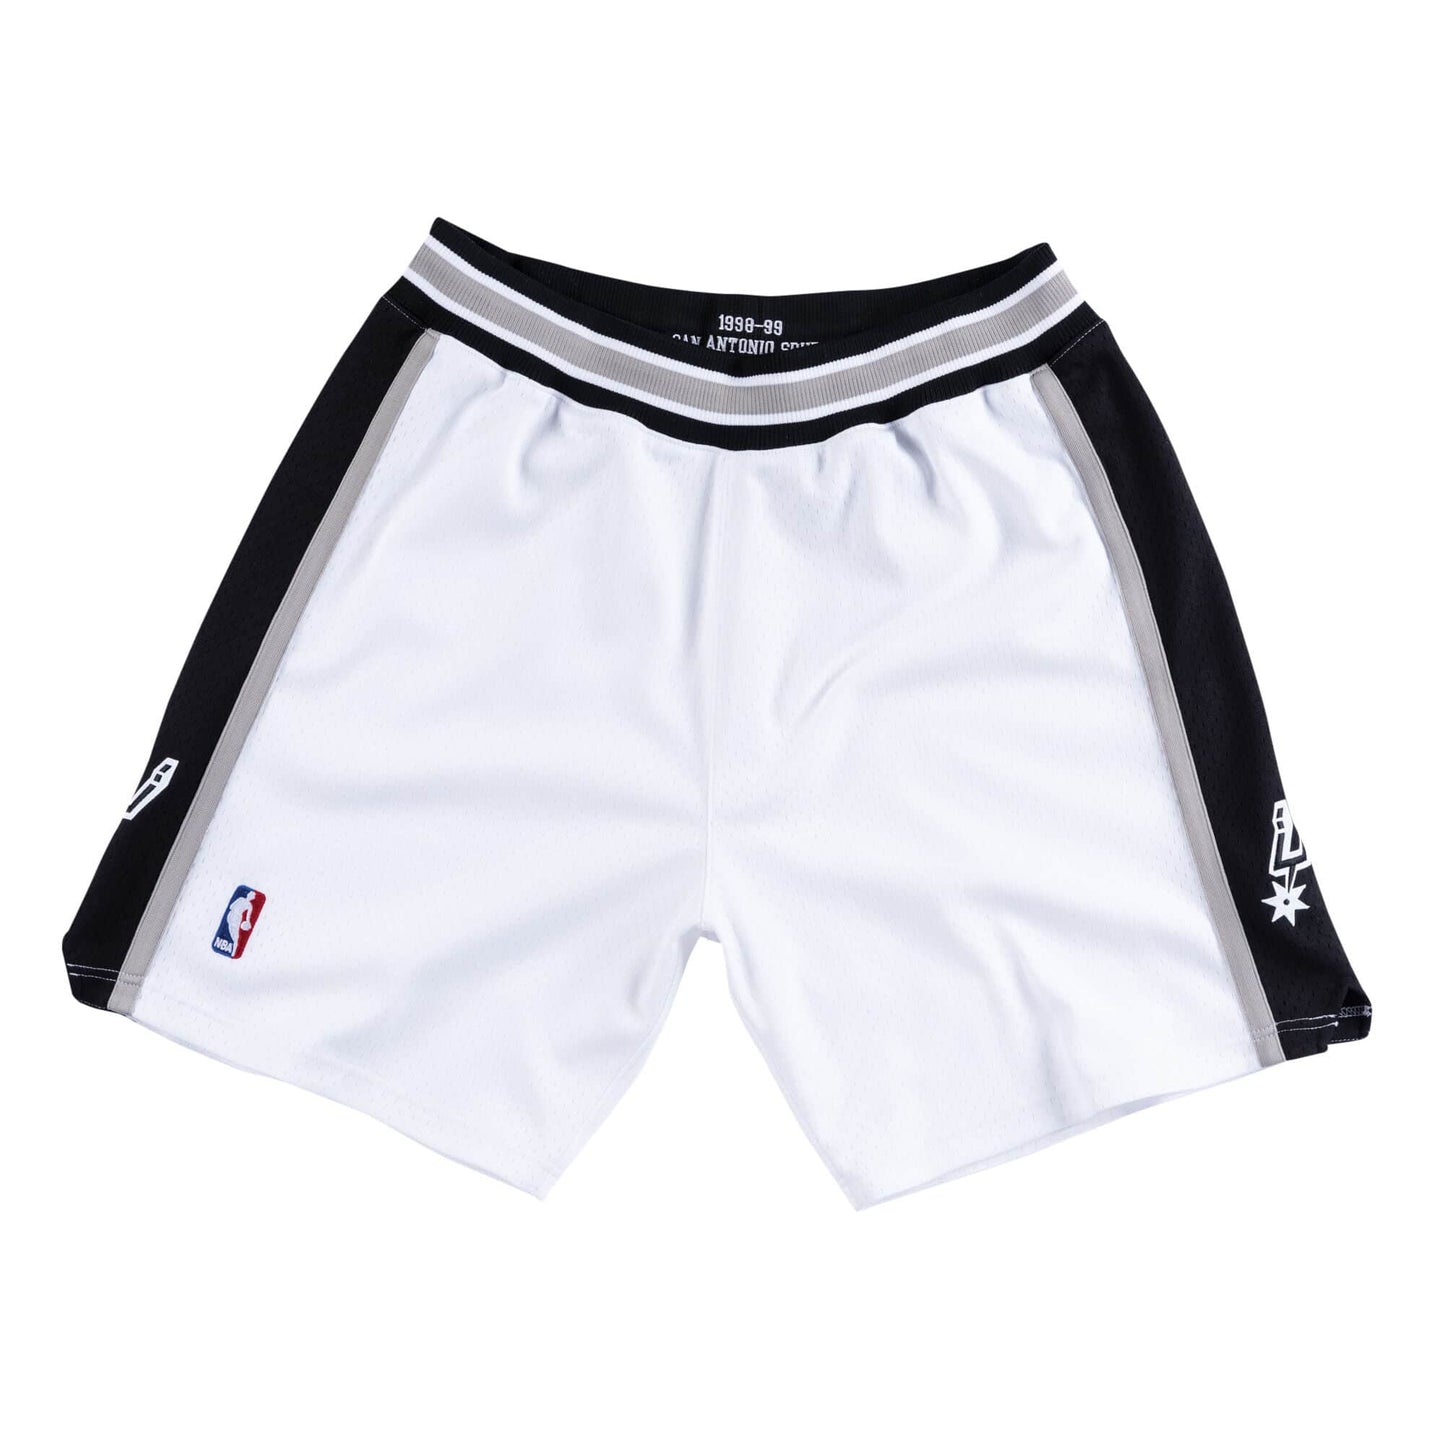 NBA Authentic Shorts San Antonio Spurs Home 1998-99